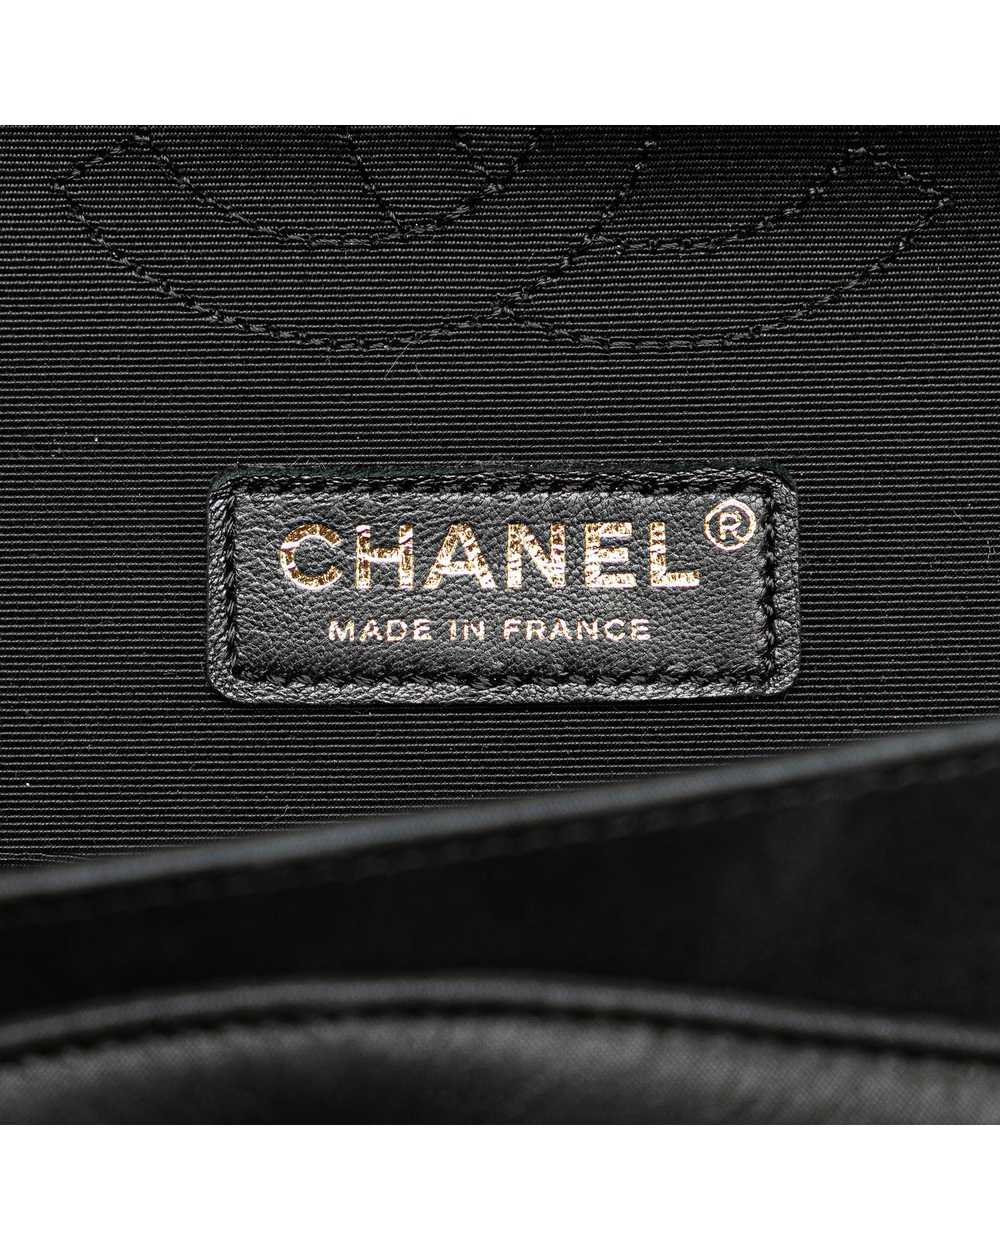 Chanel Bicolor Caviar Double Flap Shoulder Bag - image 6